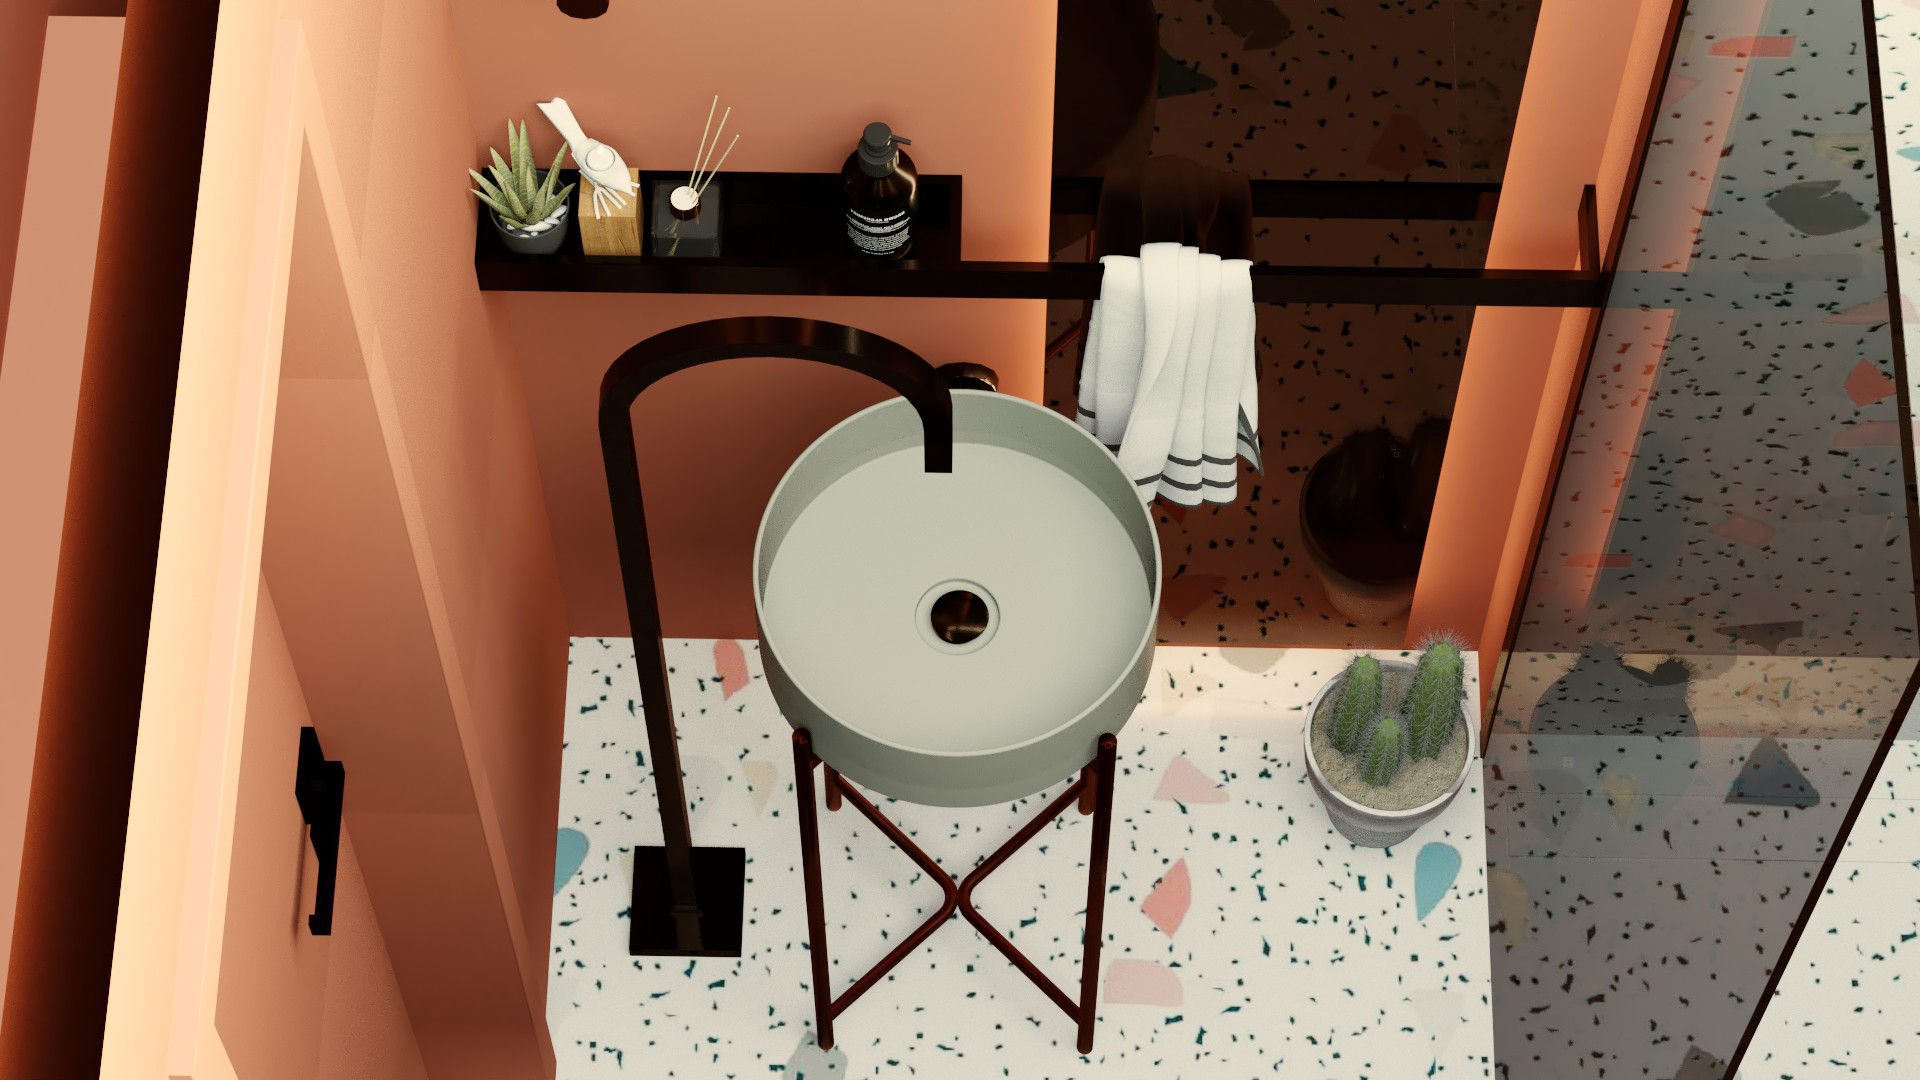 Casa de banho minimalista, Letícia Gurgel design de interiores Letícia Gurgel design de interiores Bathroom